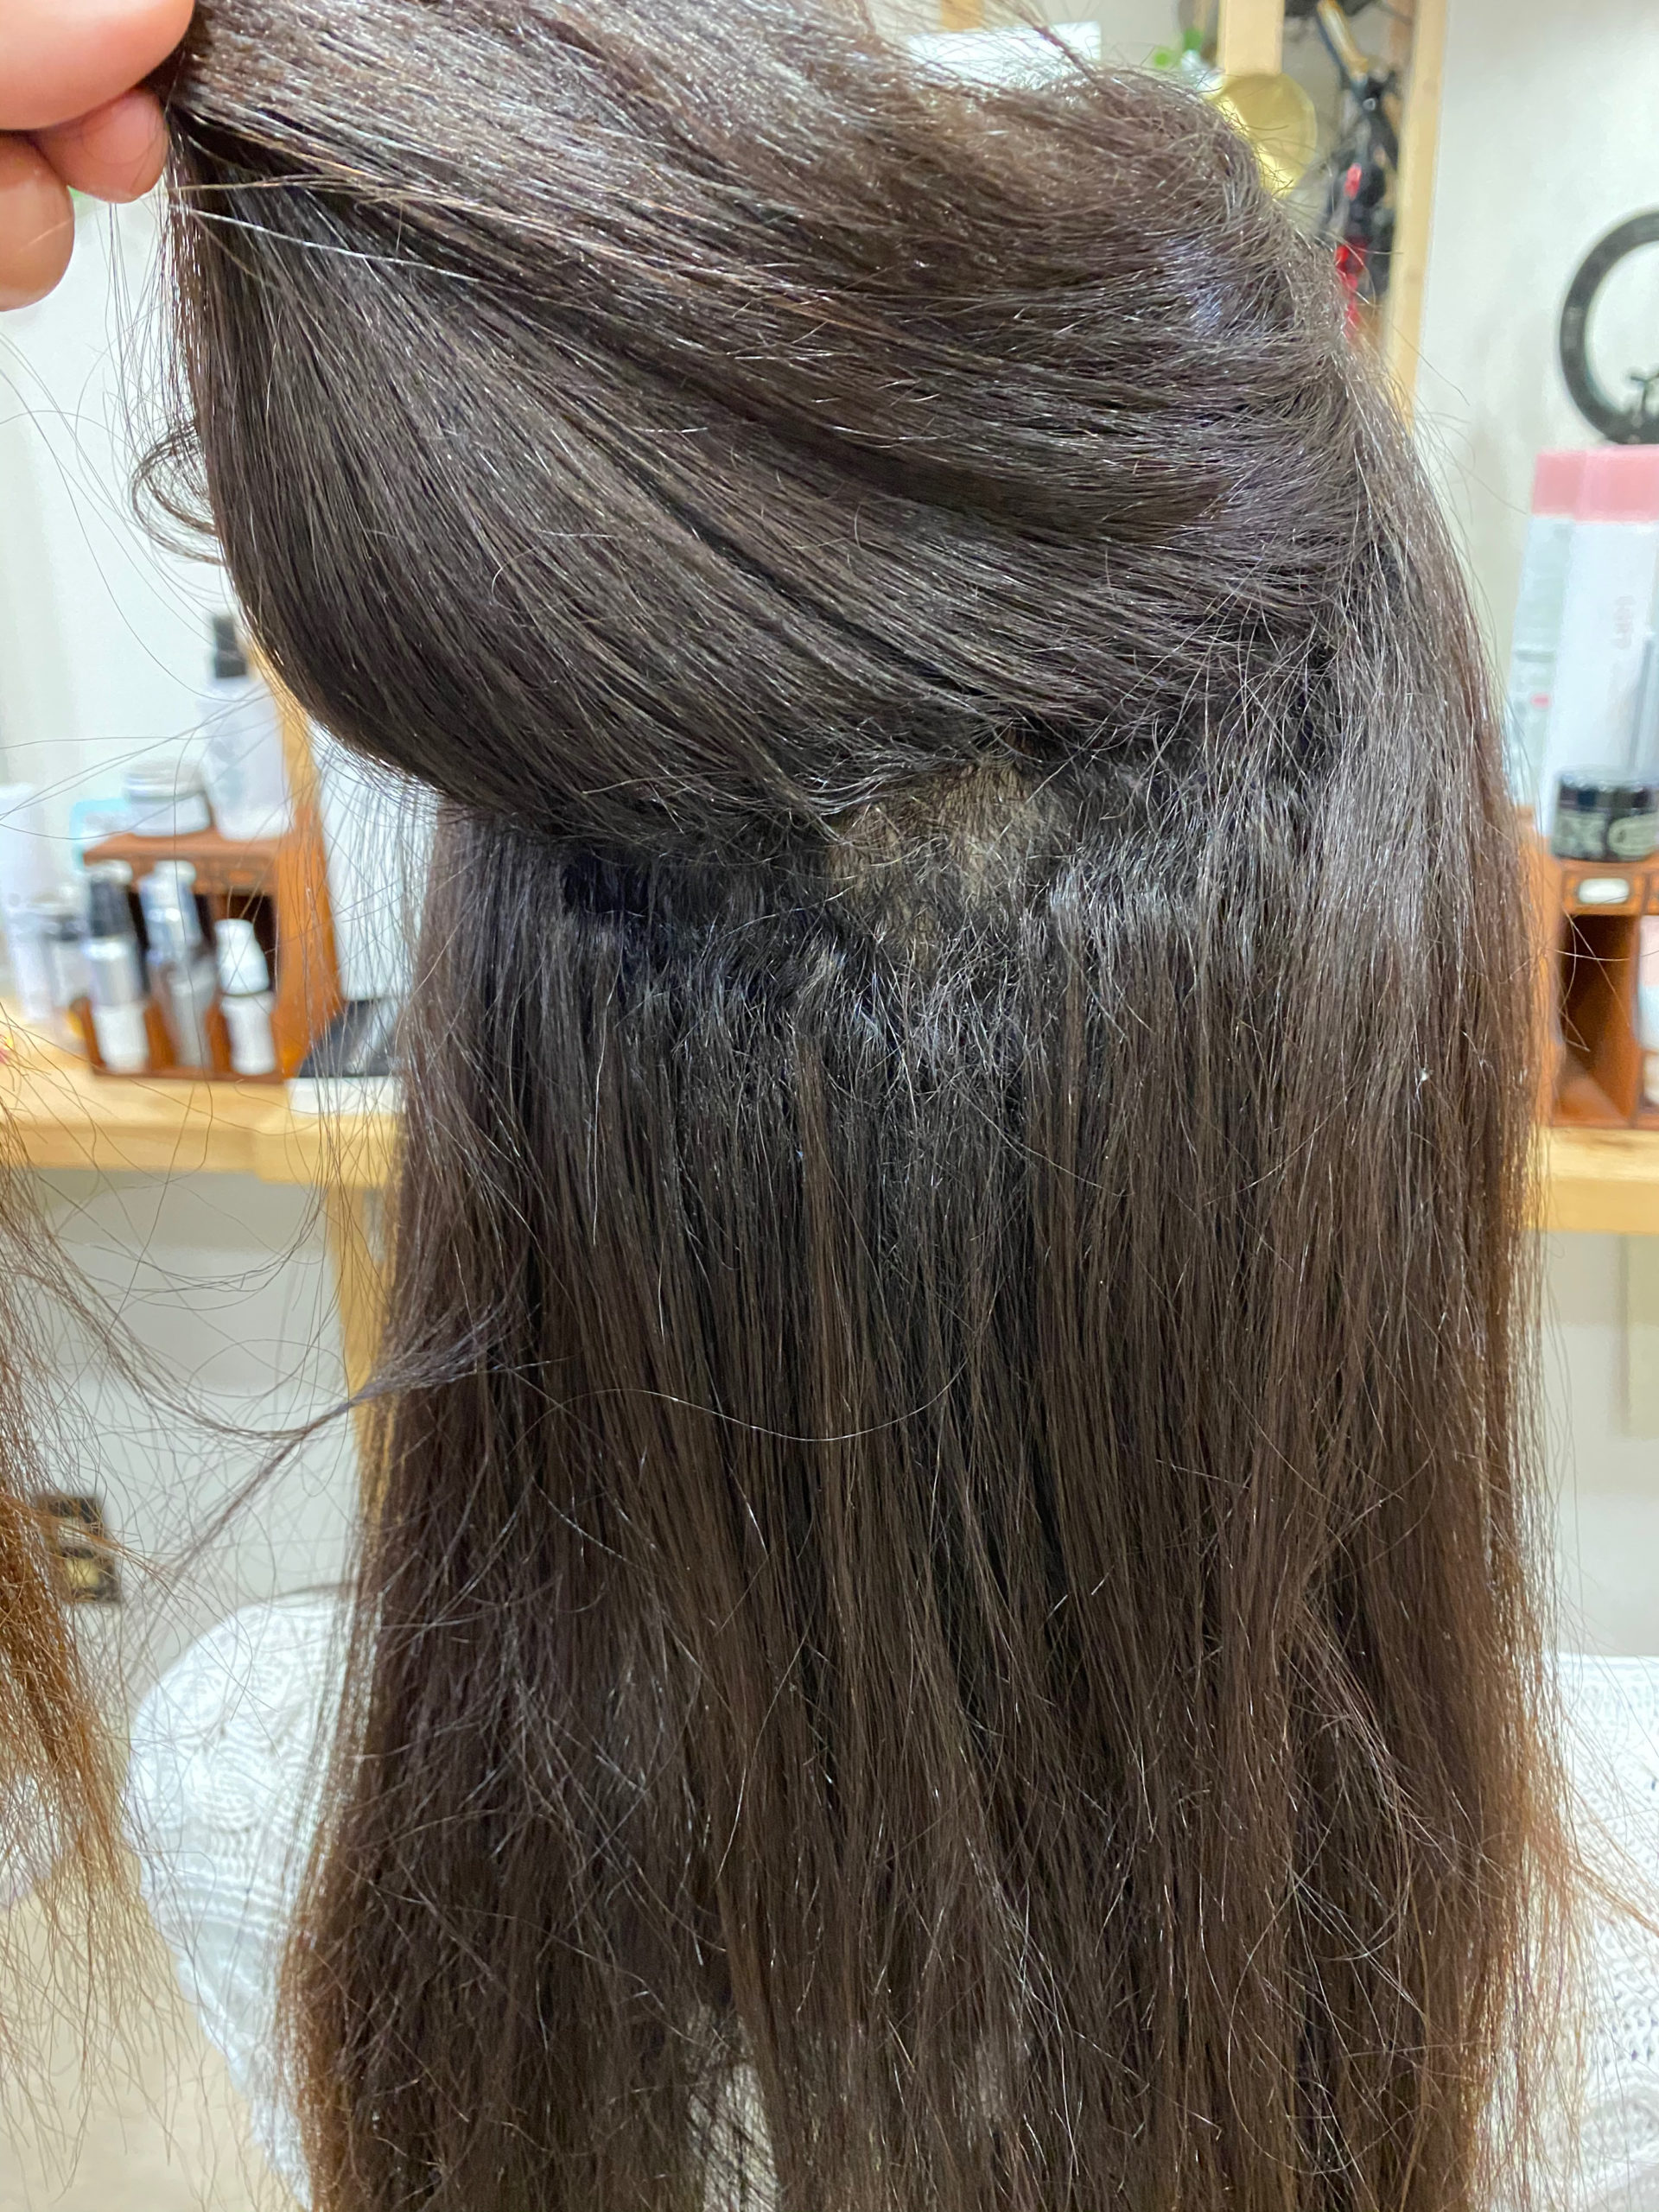 強いくせ毛の縮毛矯正でしっかりストレートヘア。原宿・表参道『髪のお悩みを解決するヘアケア美容師の挑戦』